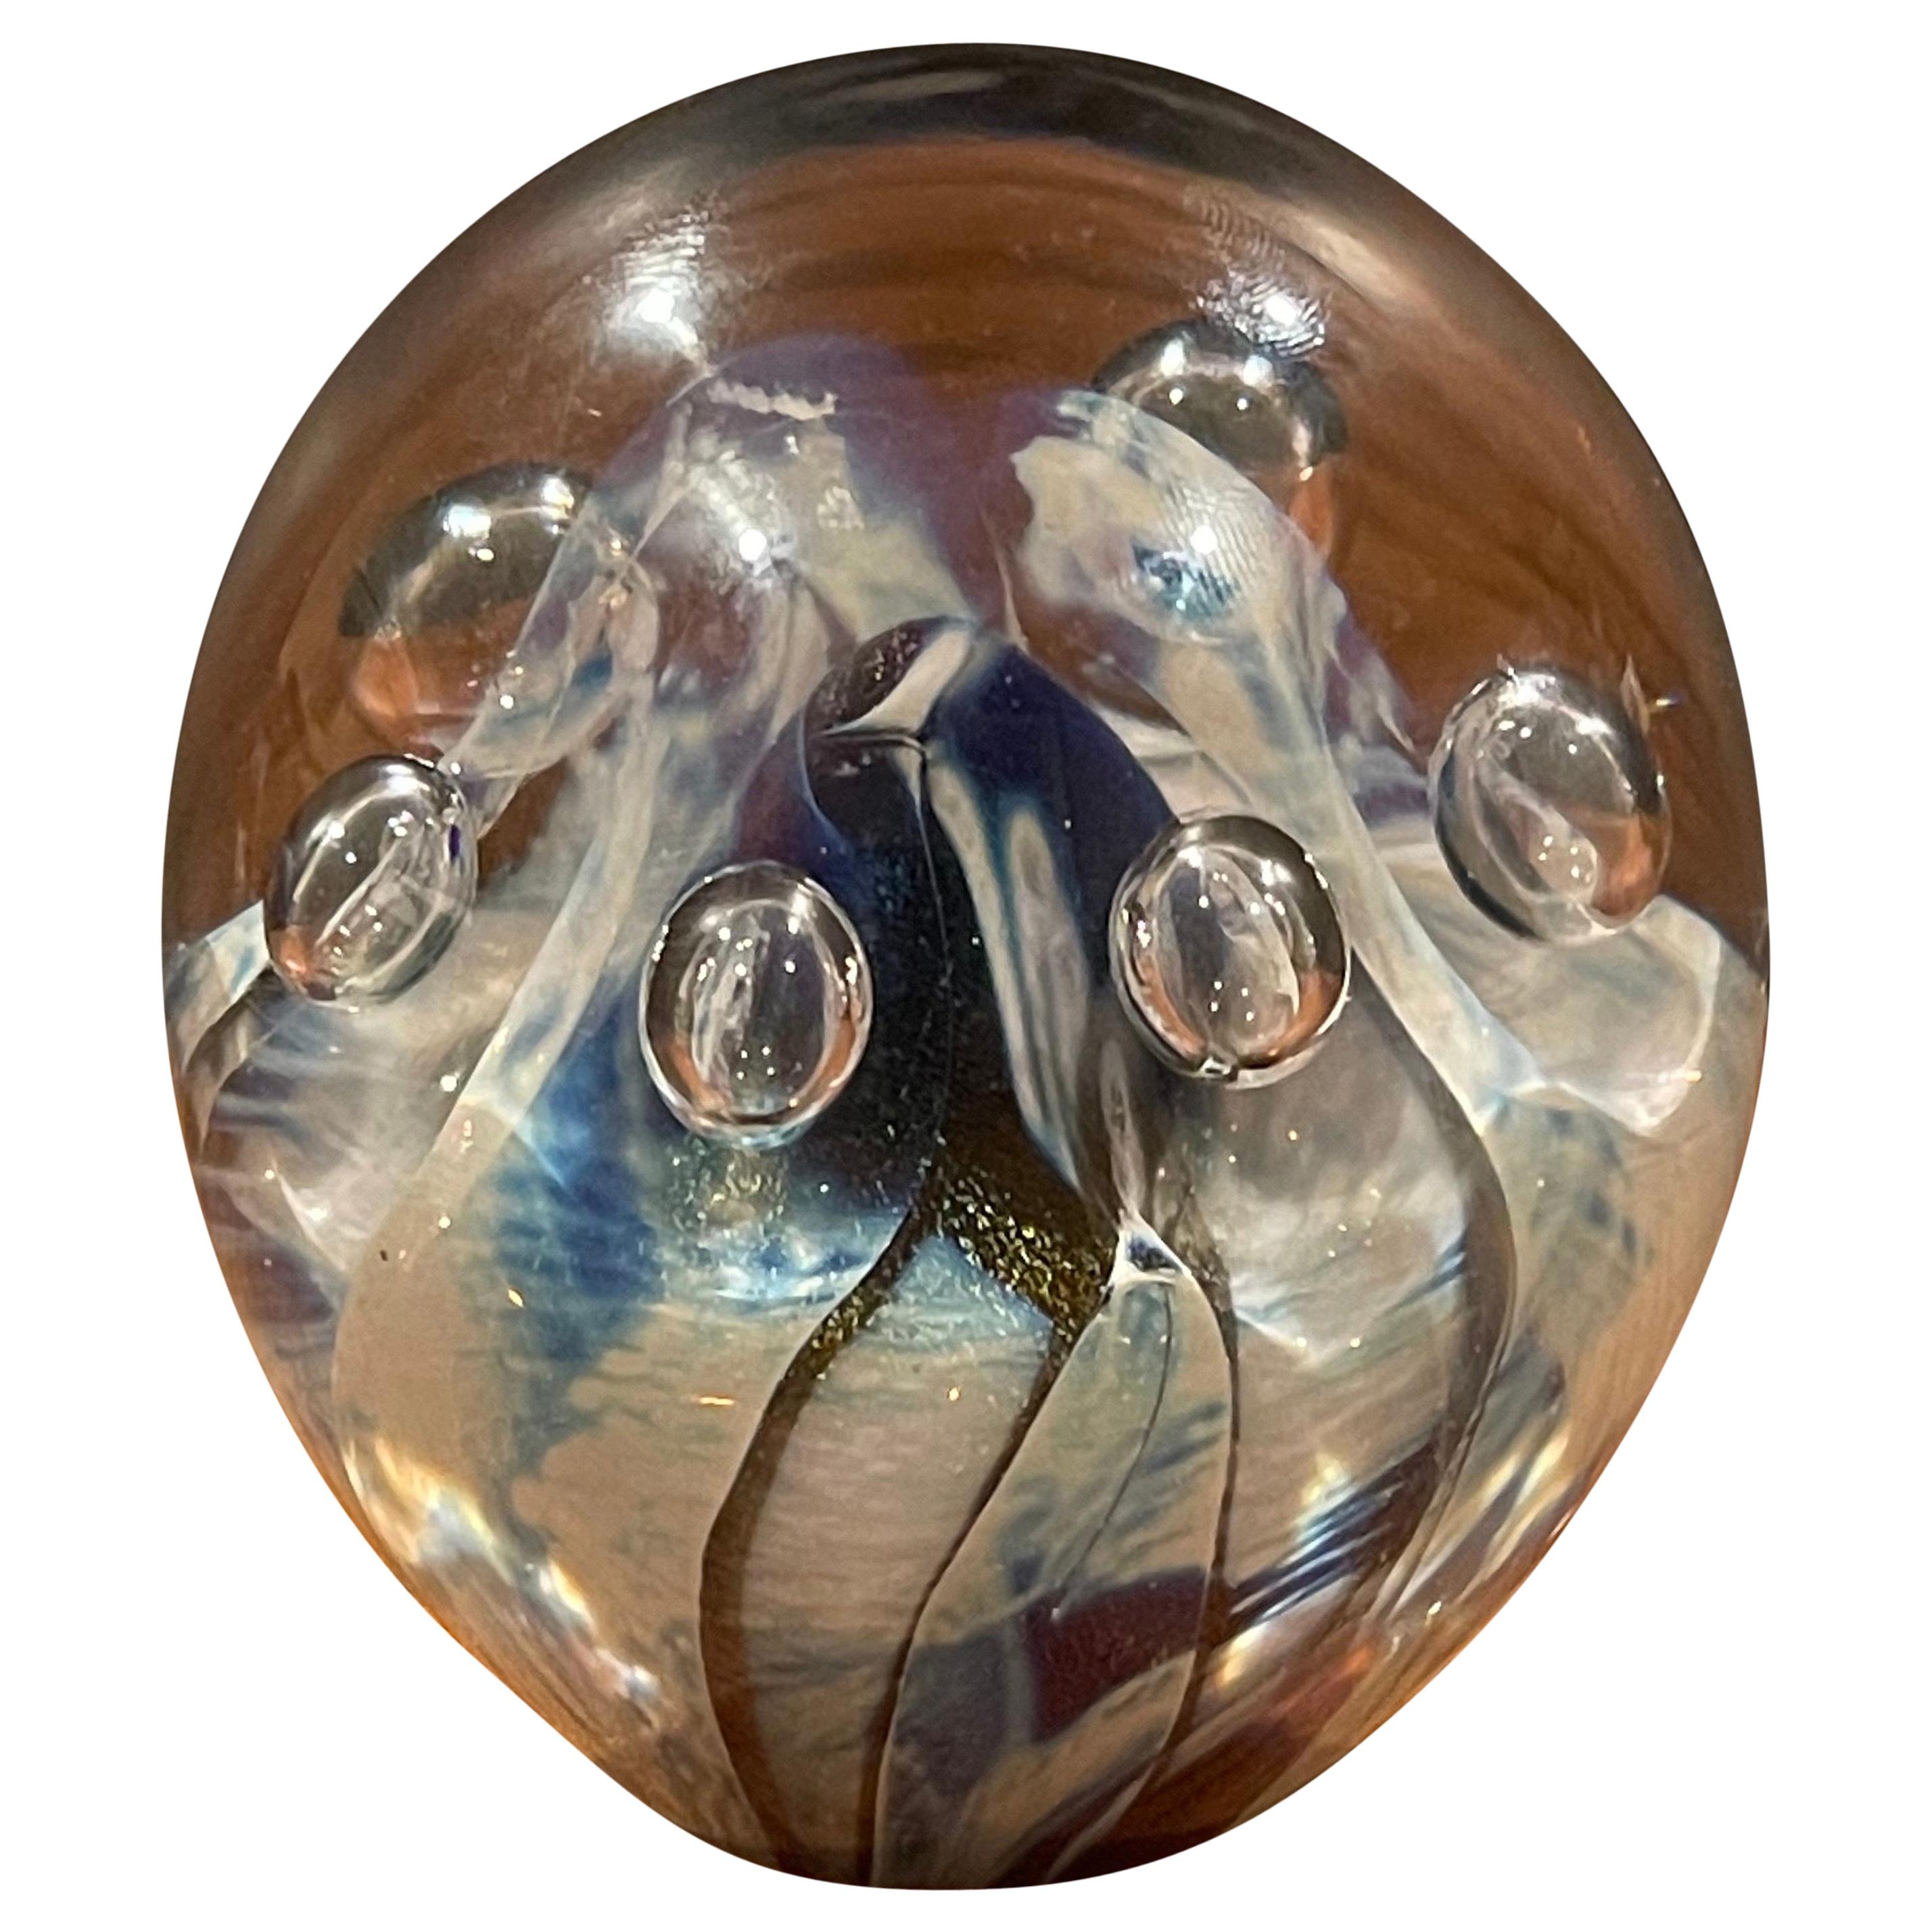 Art Glass Orb Sculpture or Paperweight by Robert Eickholt